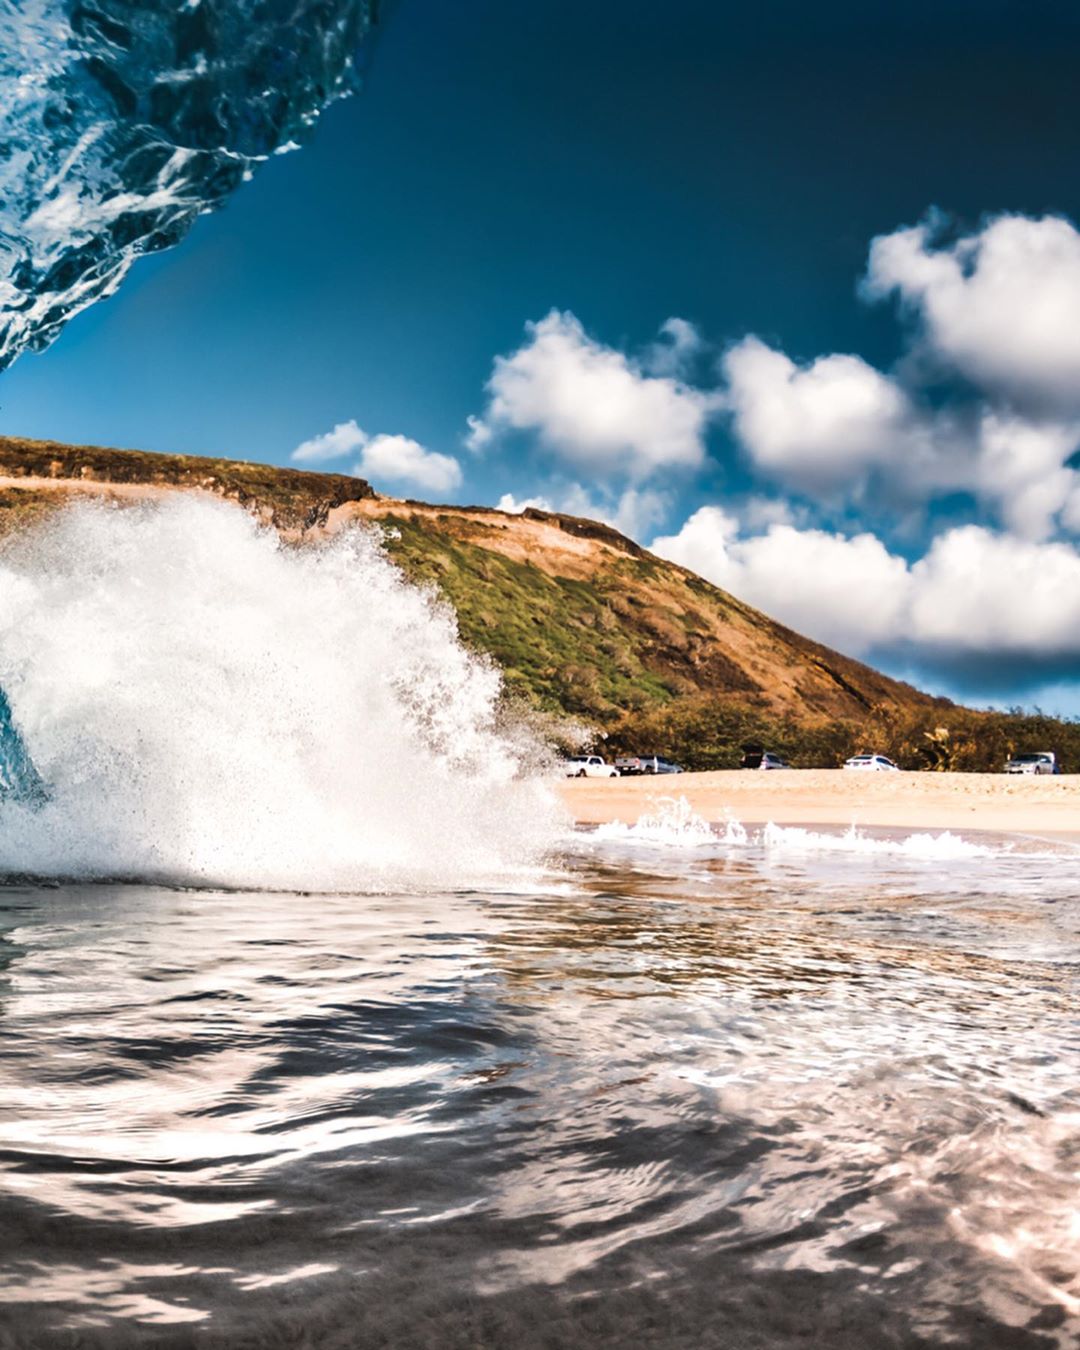 Бездонный мир моря на фантастических снимках Беннетта Ломбардо вода,море,тревел-фото